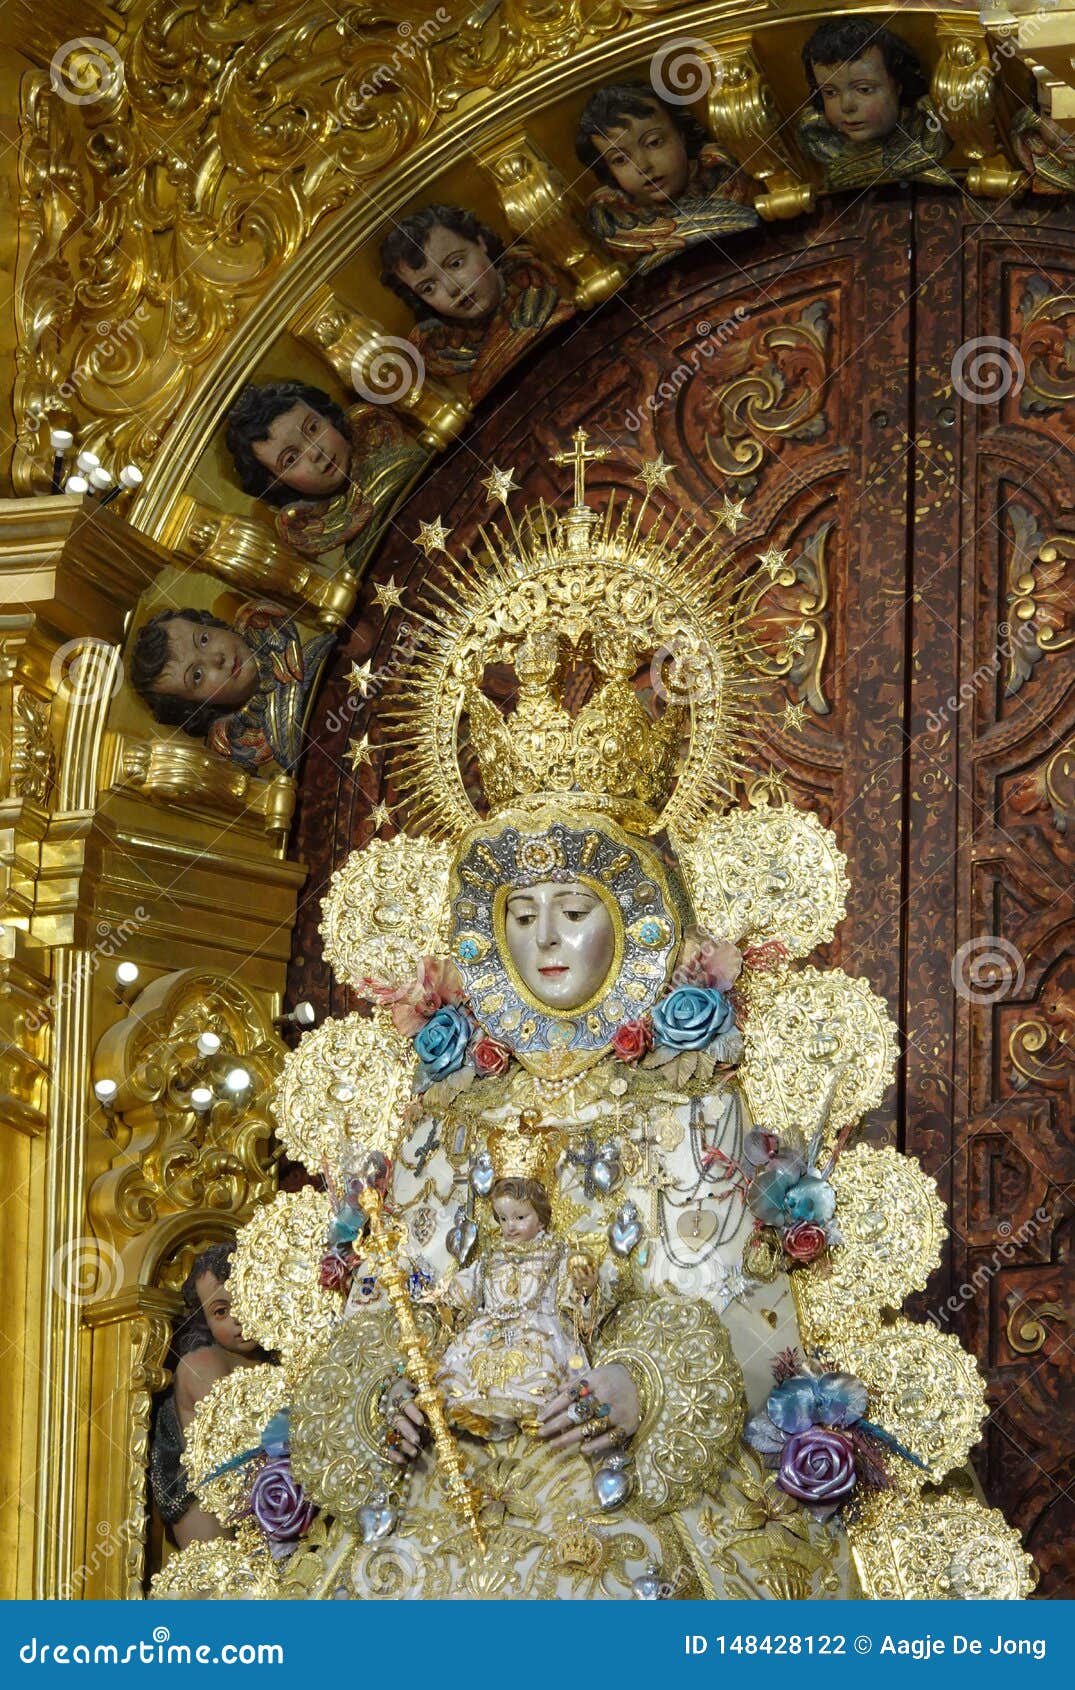 the virgin of el rocio in santuario nuestra senora del rocio in andalusia